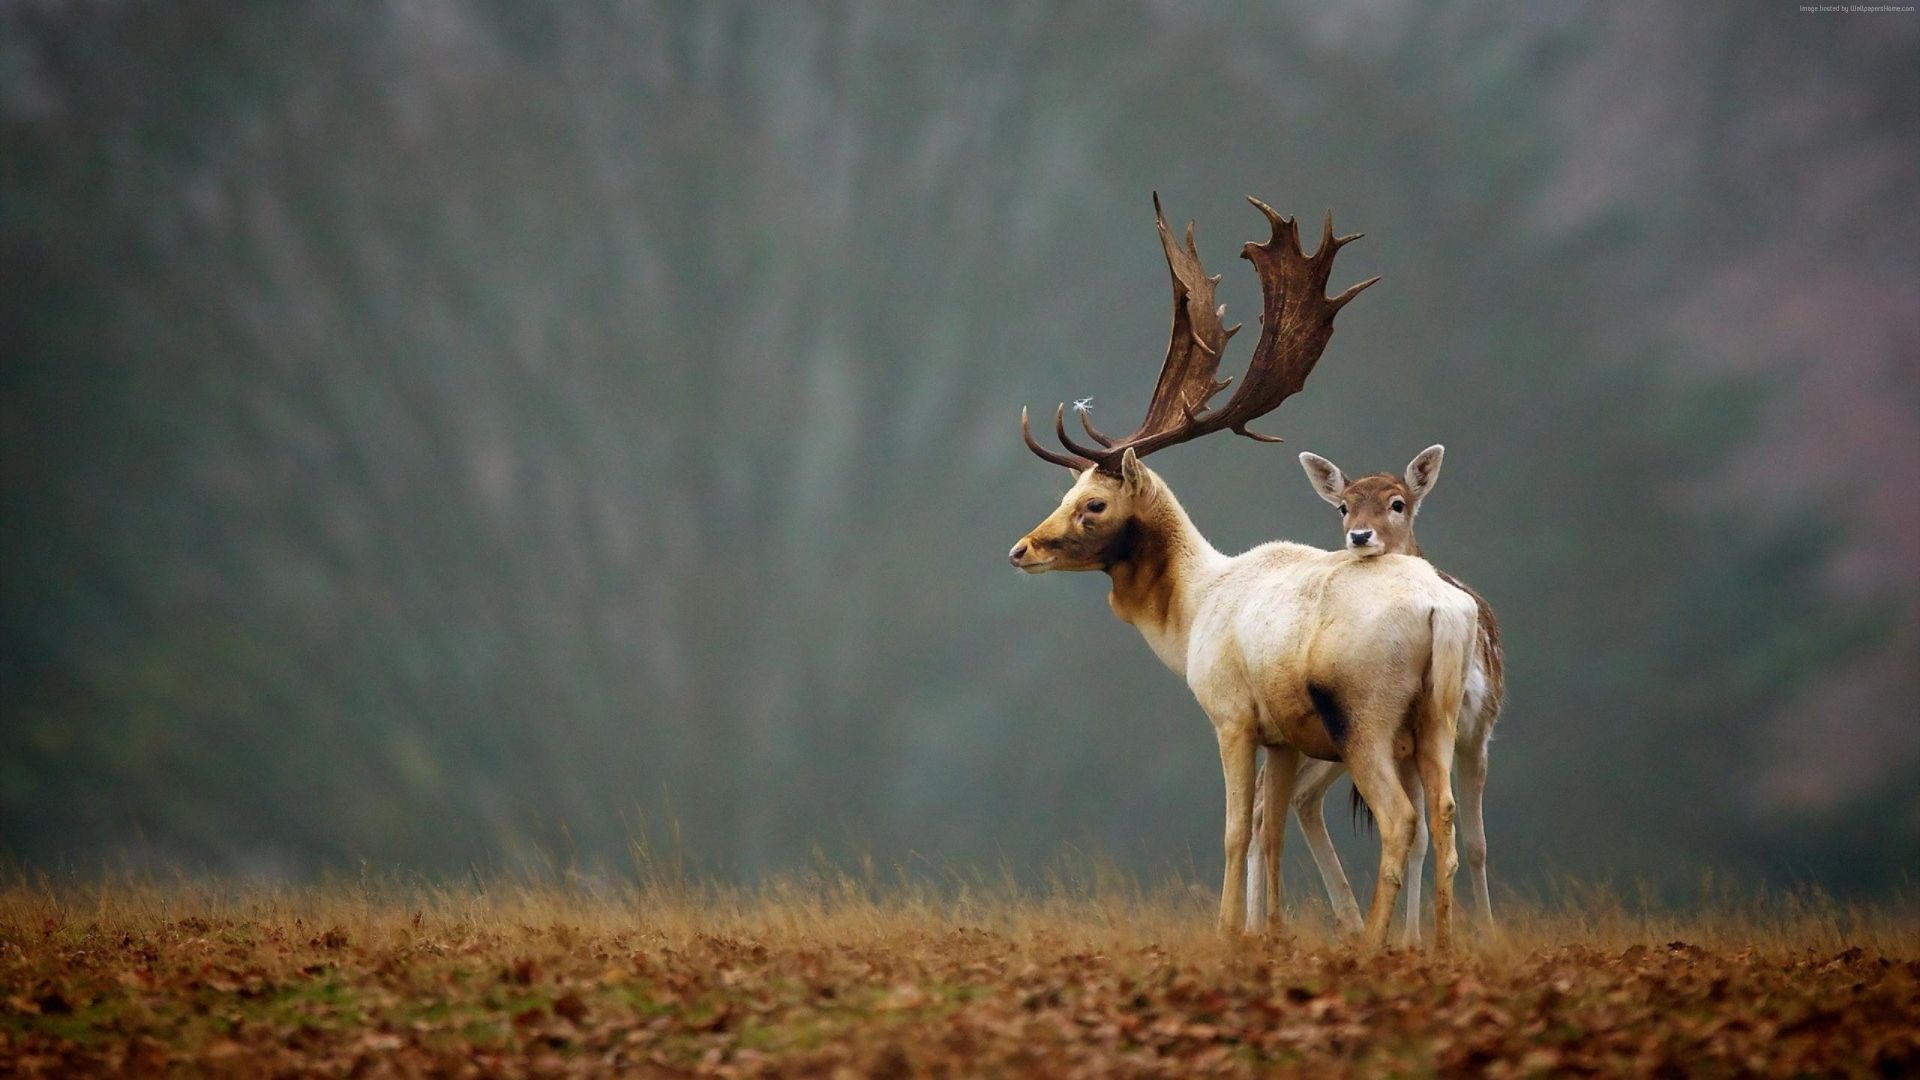 олень, deer, cute animals, autumn, 4k (horizontal)